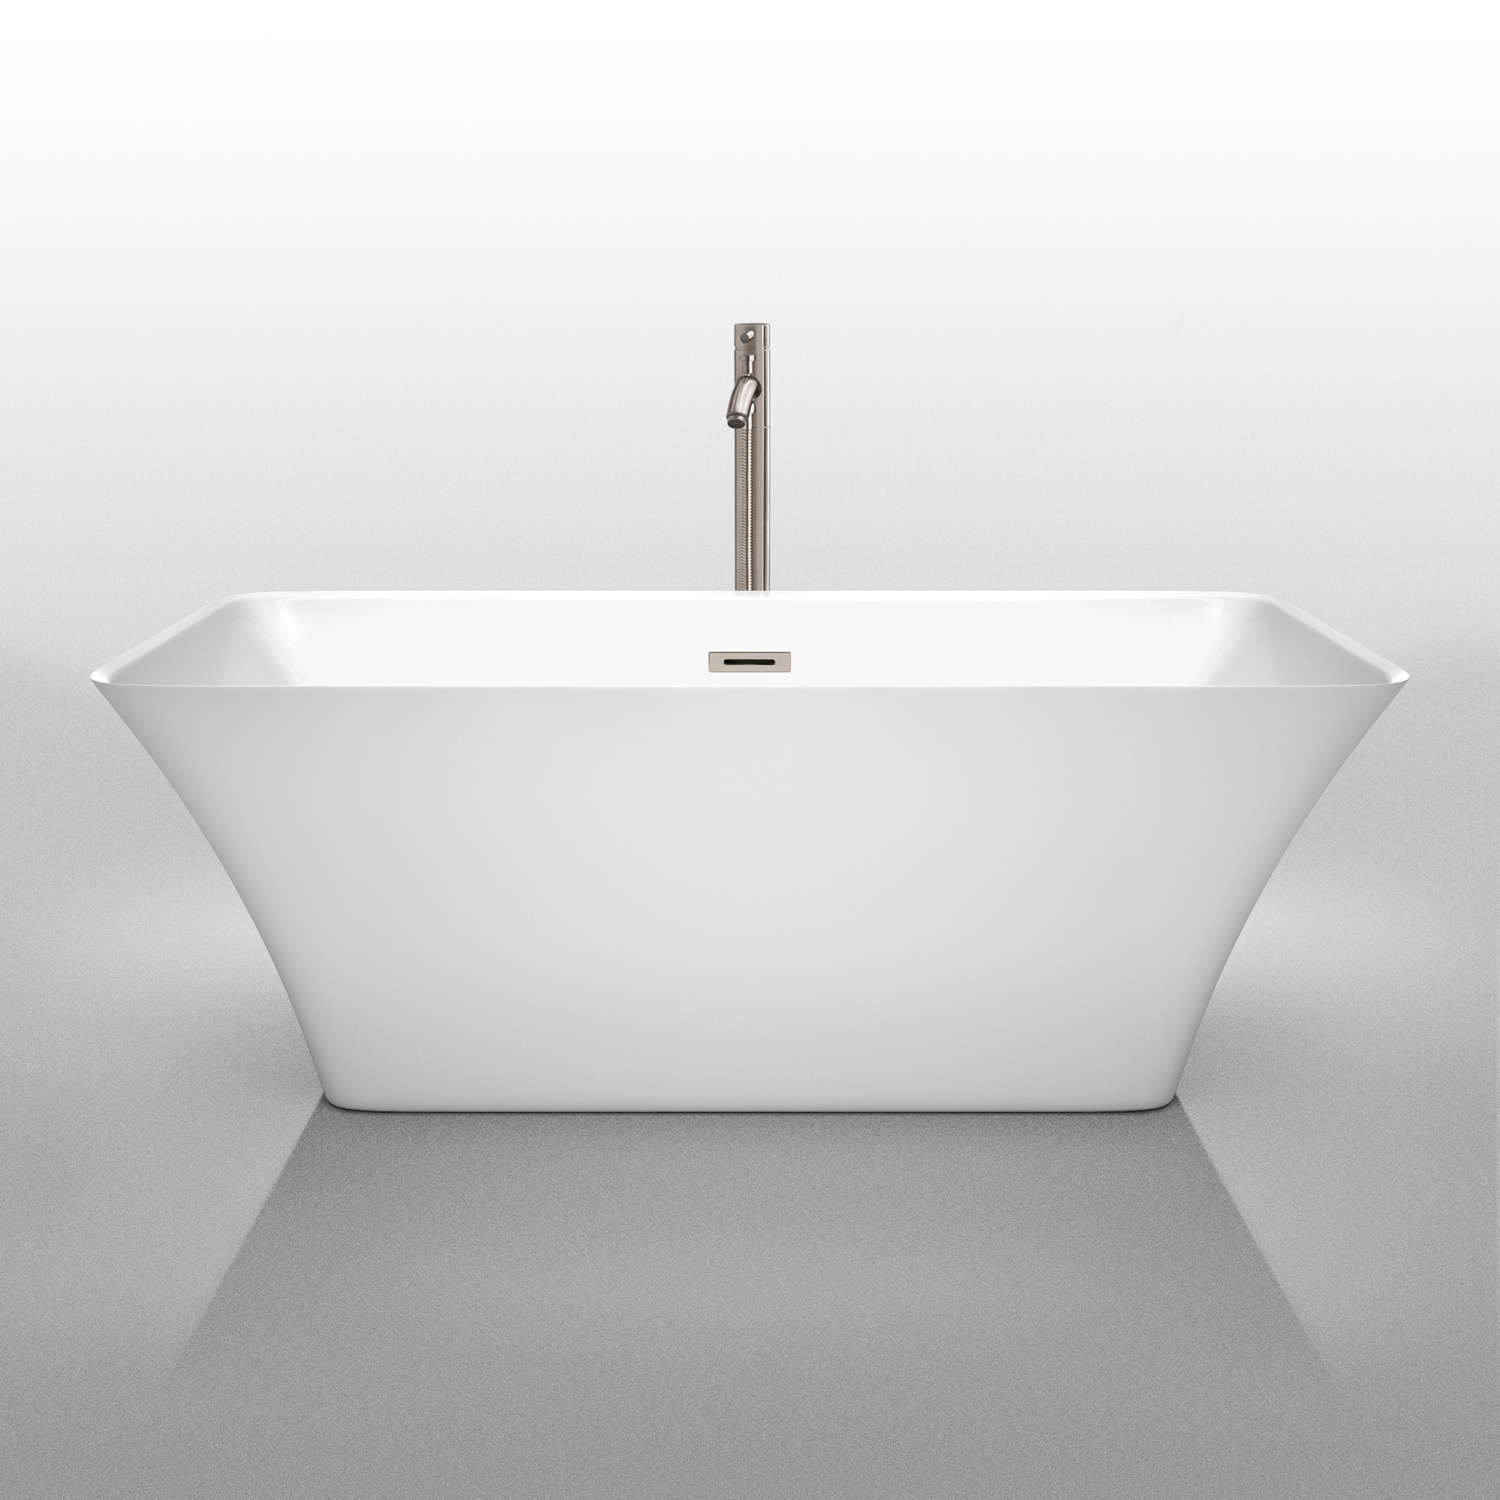 tiffany 59" small soaking bathtub by wyndham collection